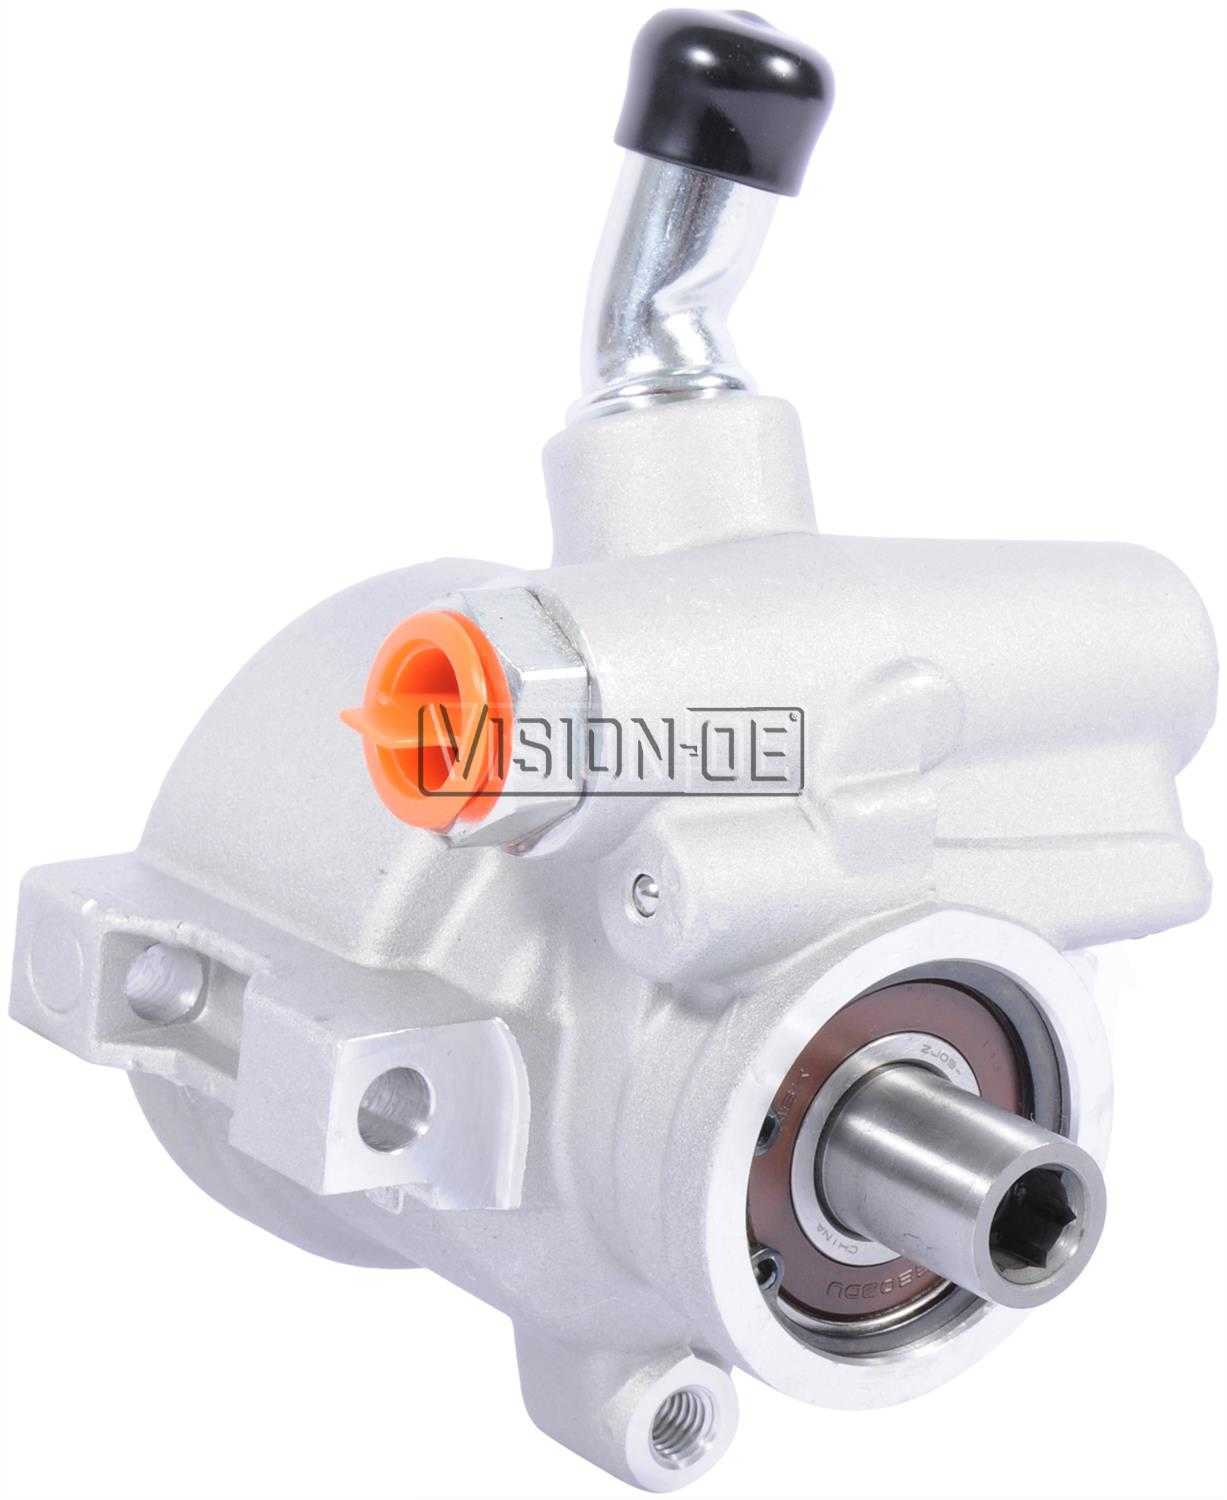 VISION-OE - Reman Power Steering Pump - VOE 733-0120